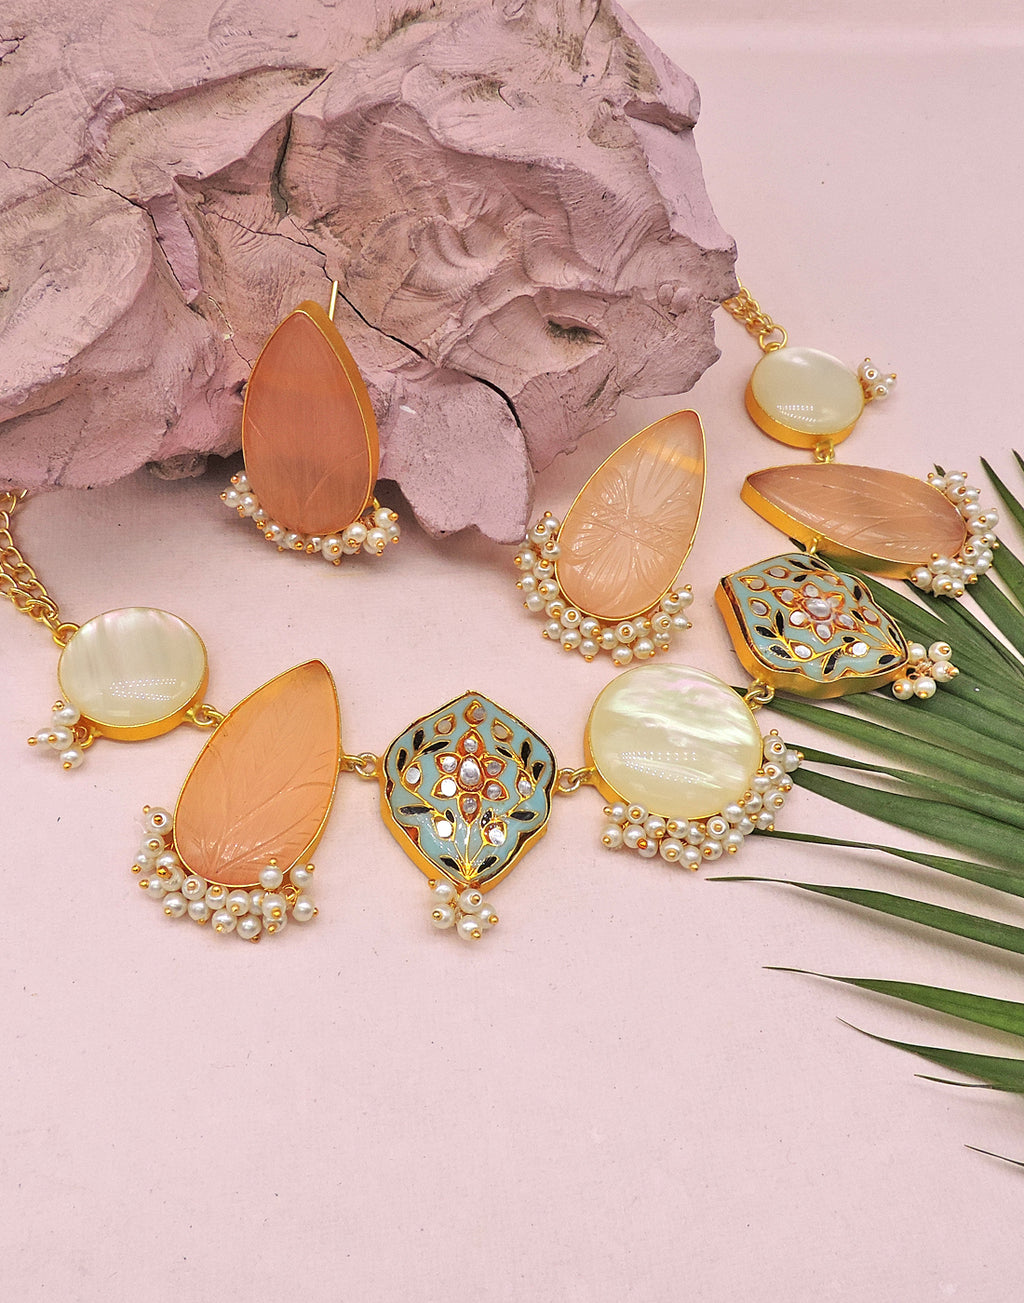 Orange Teardrop Earrings - Statement Earrings - Gold-Plated & Hypoallergenic Jewellery - Made in India - Dubai Jewellery - Dori